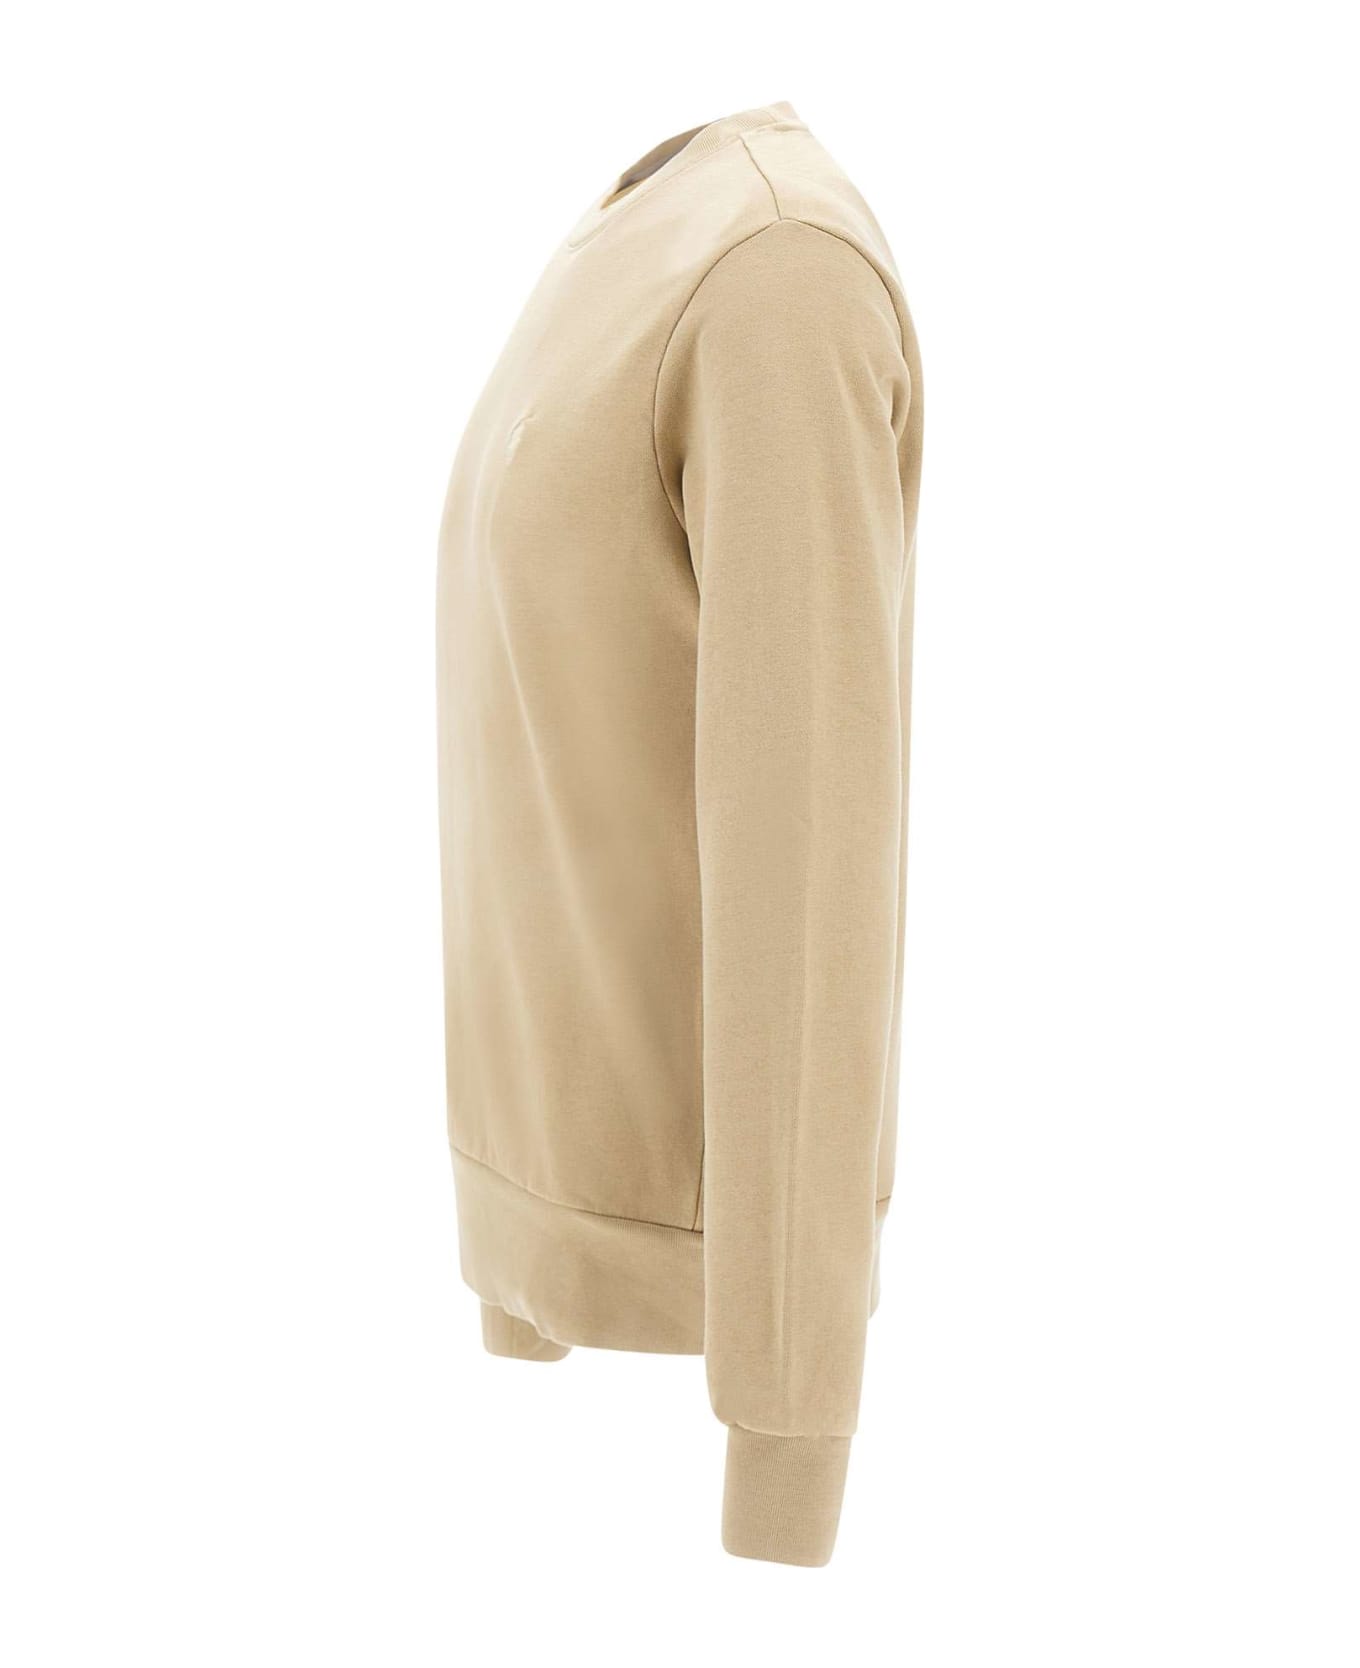 Polo Ralph Lauren 'classics' Cotton Sweatshirt - BEIGE